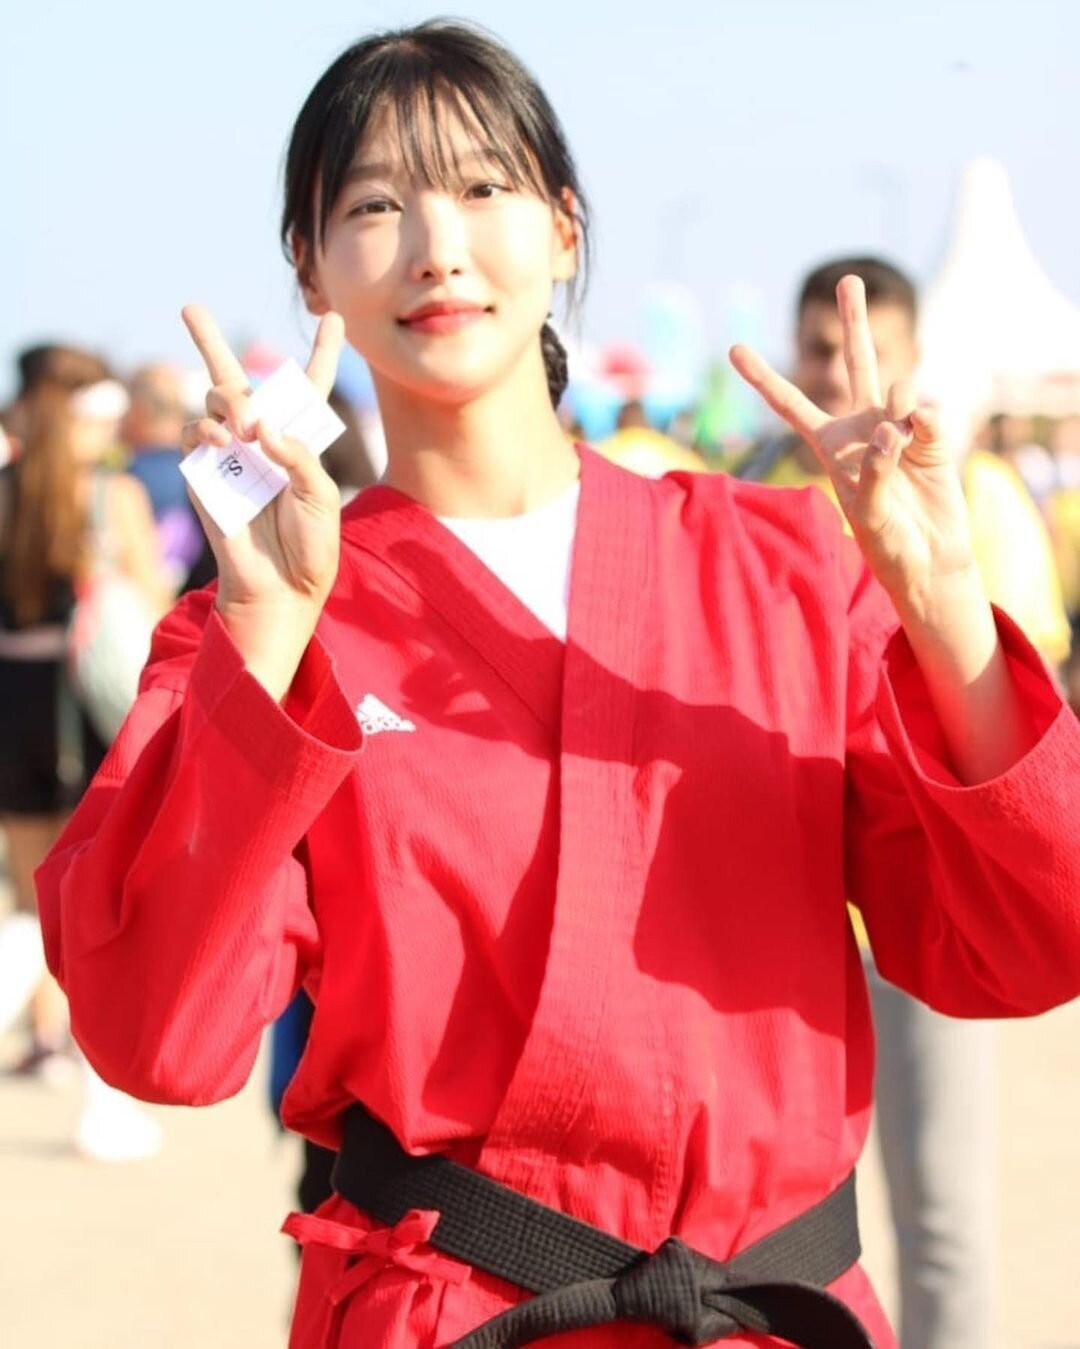 Trước khi thi hoa hậu Hàn Quốc, Hee-jun từng tập luyện thể thao ở trường đại học nhưng không phải là môn kabaddi. Cô tập điền kinh và cũng là đội trưởng đội cổ vũ thể thao.